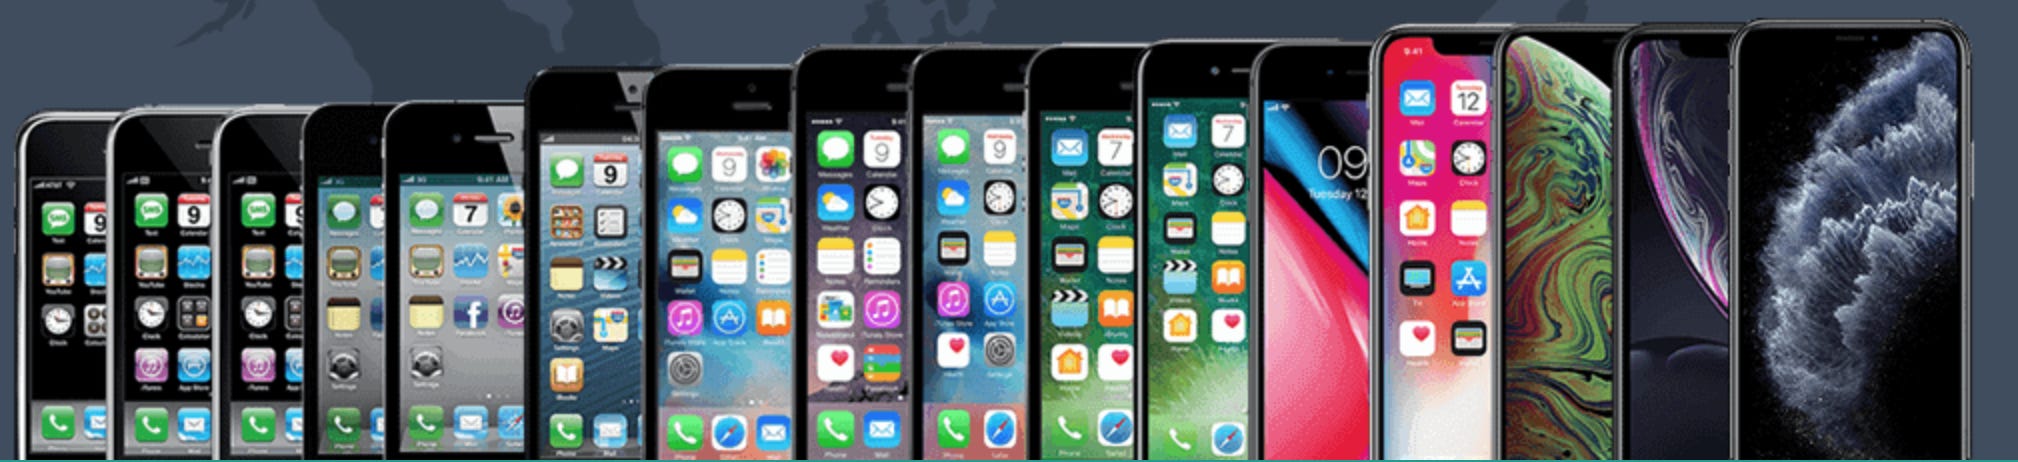 История айфона 11. Вся линейка Эппл айфонов. Apple iphone 14 линейка. Эволюция Эппл айфон. Айфоны от 1 до 11.